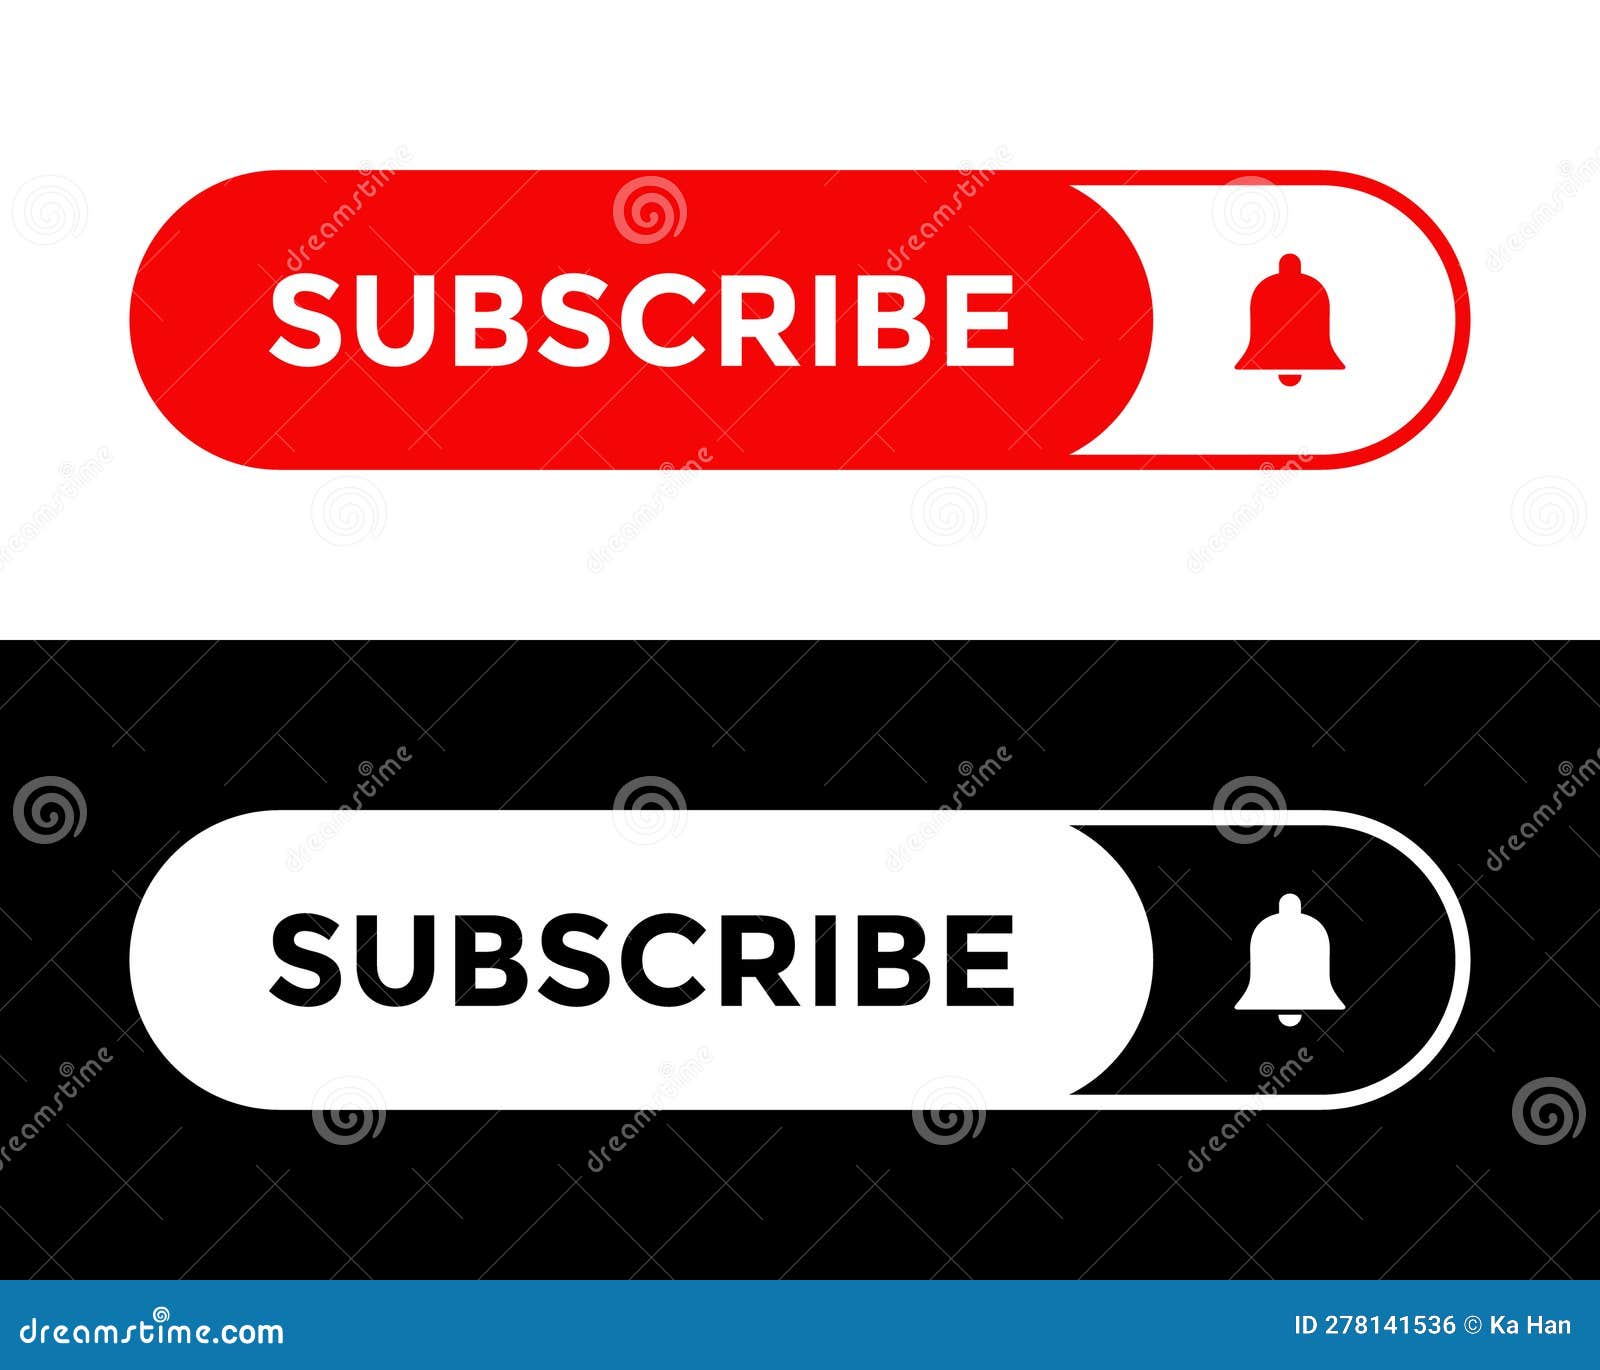 Curta, comente, compartilhe e inscreva-se. conjunto de ícones de botão para  assinatura de canal